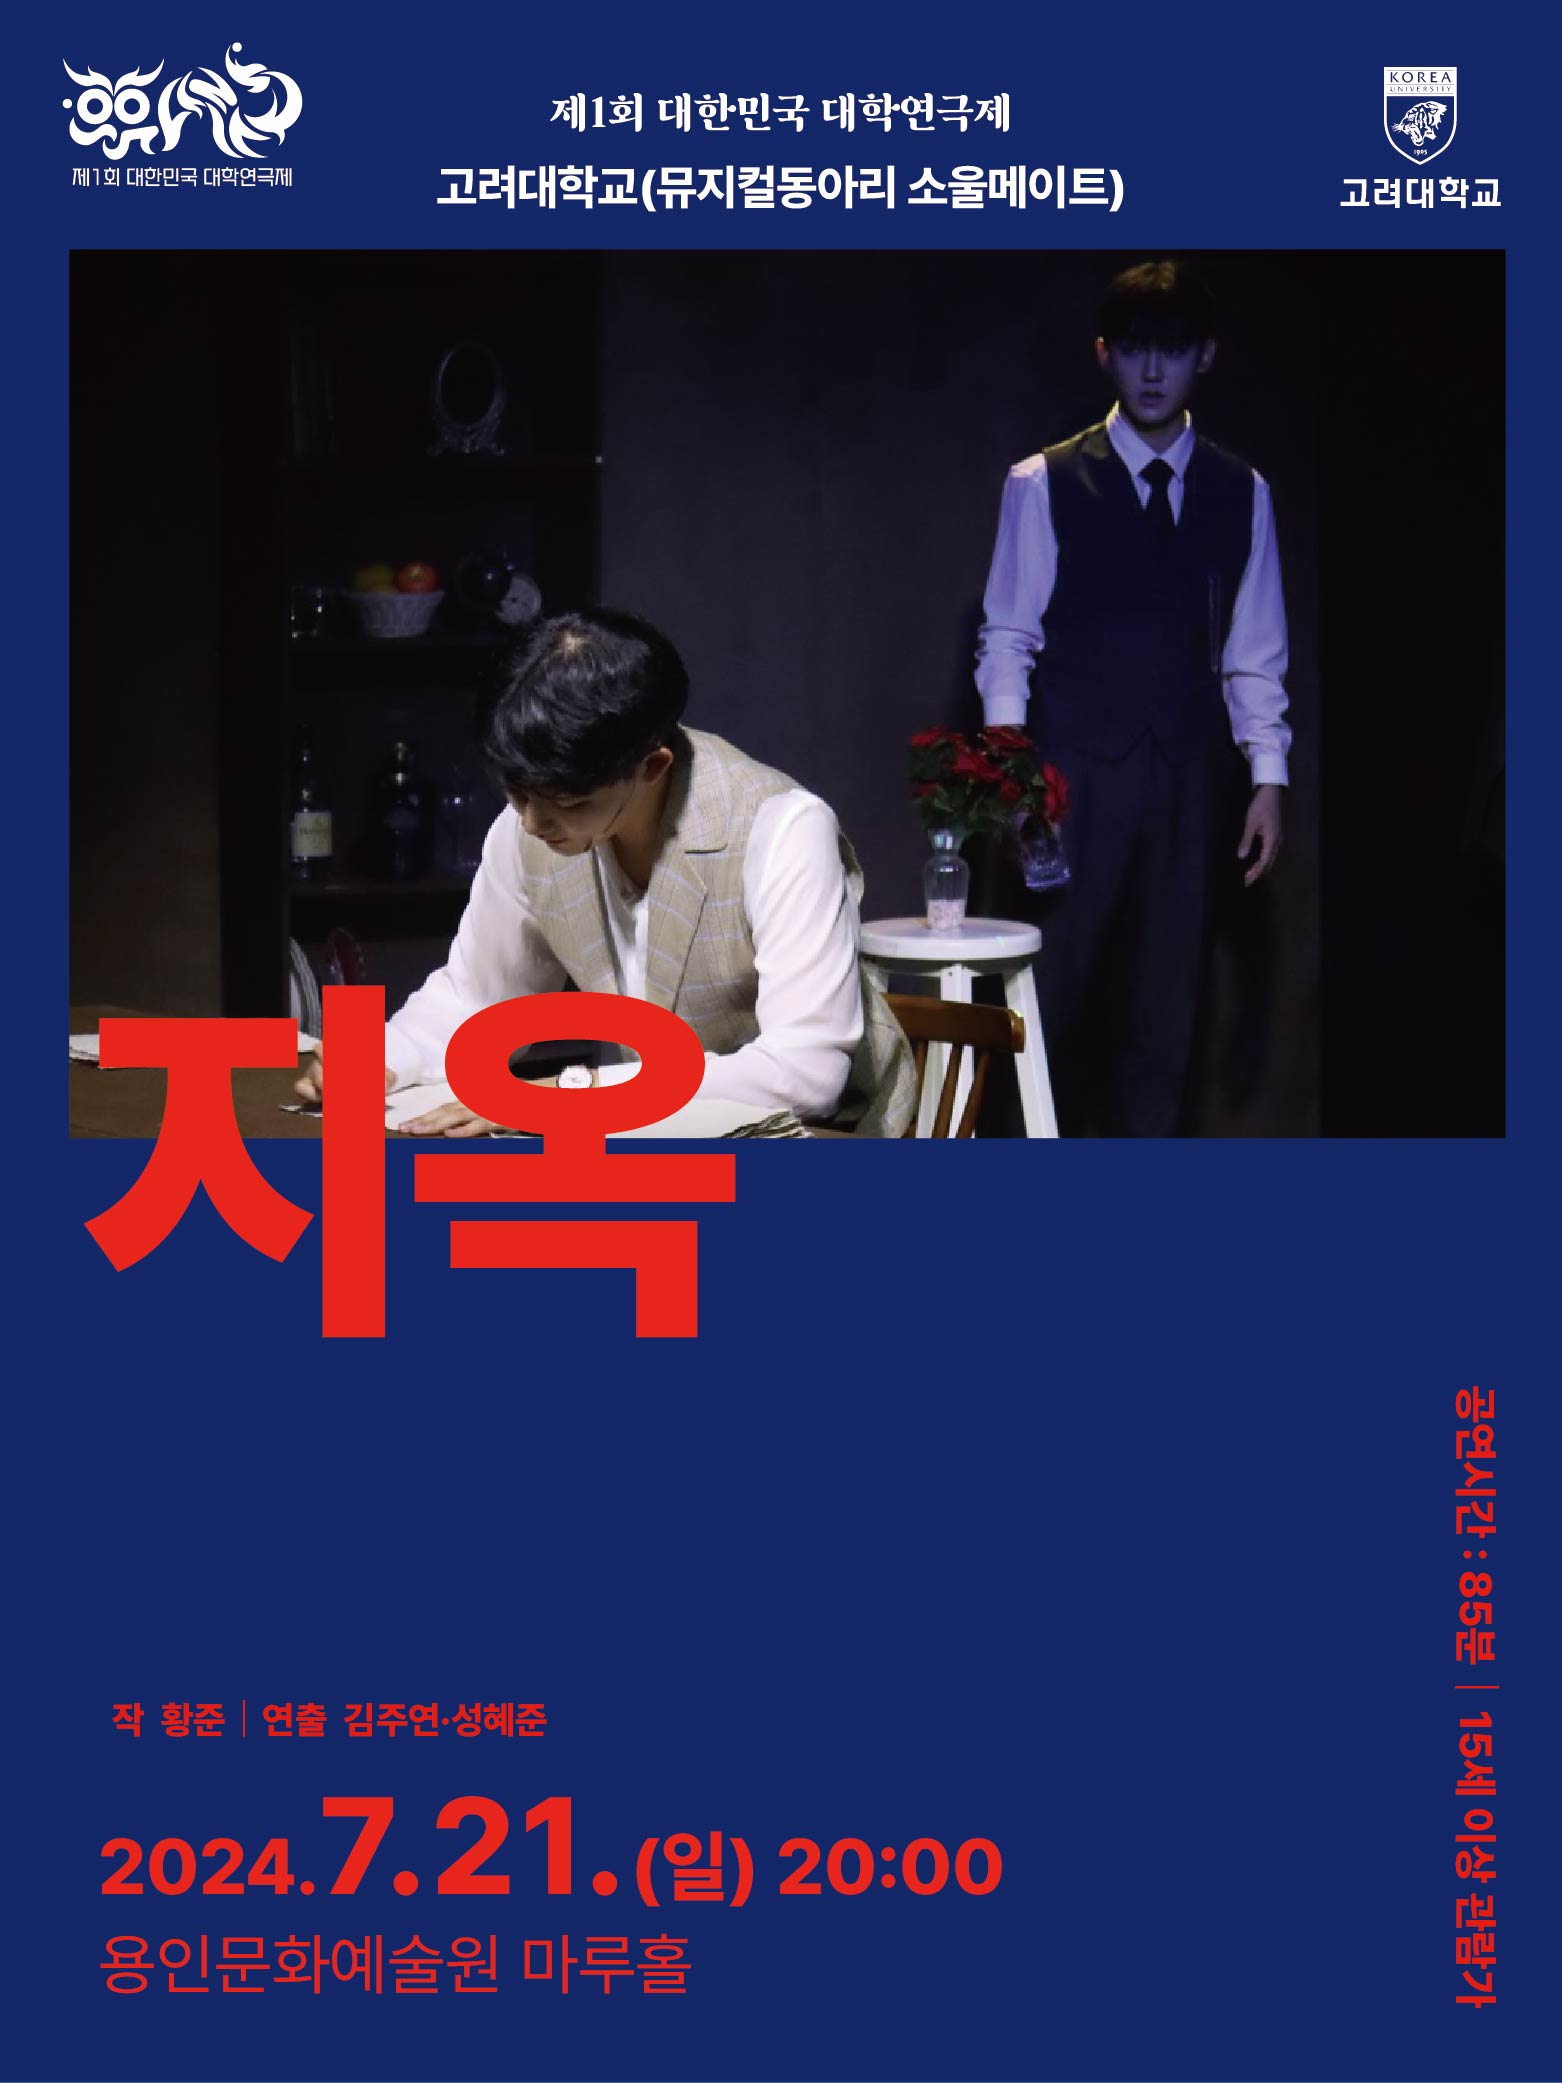 제1회 대한민국 대학연극제 〈지옥〉 (고려대) 홍보포스터